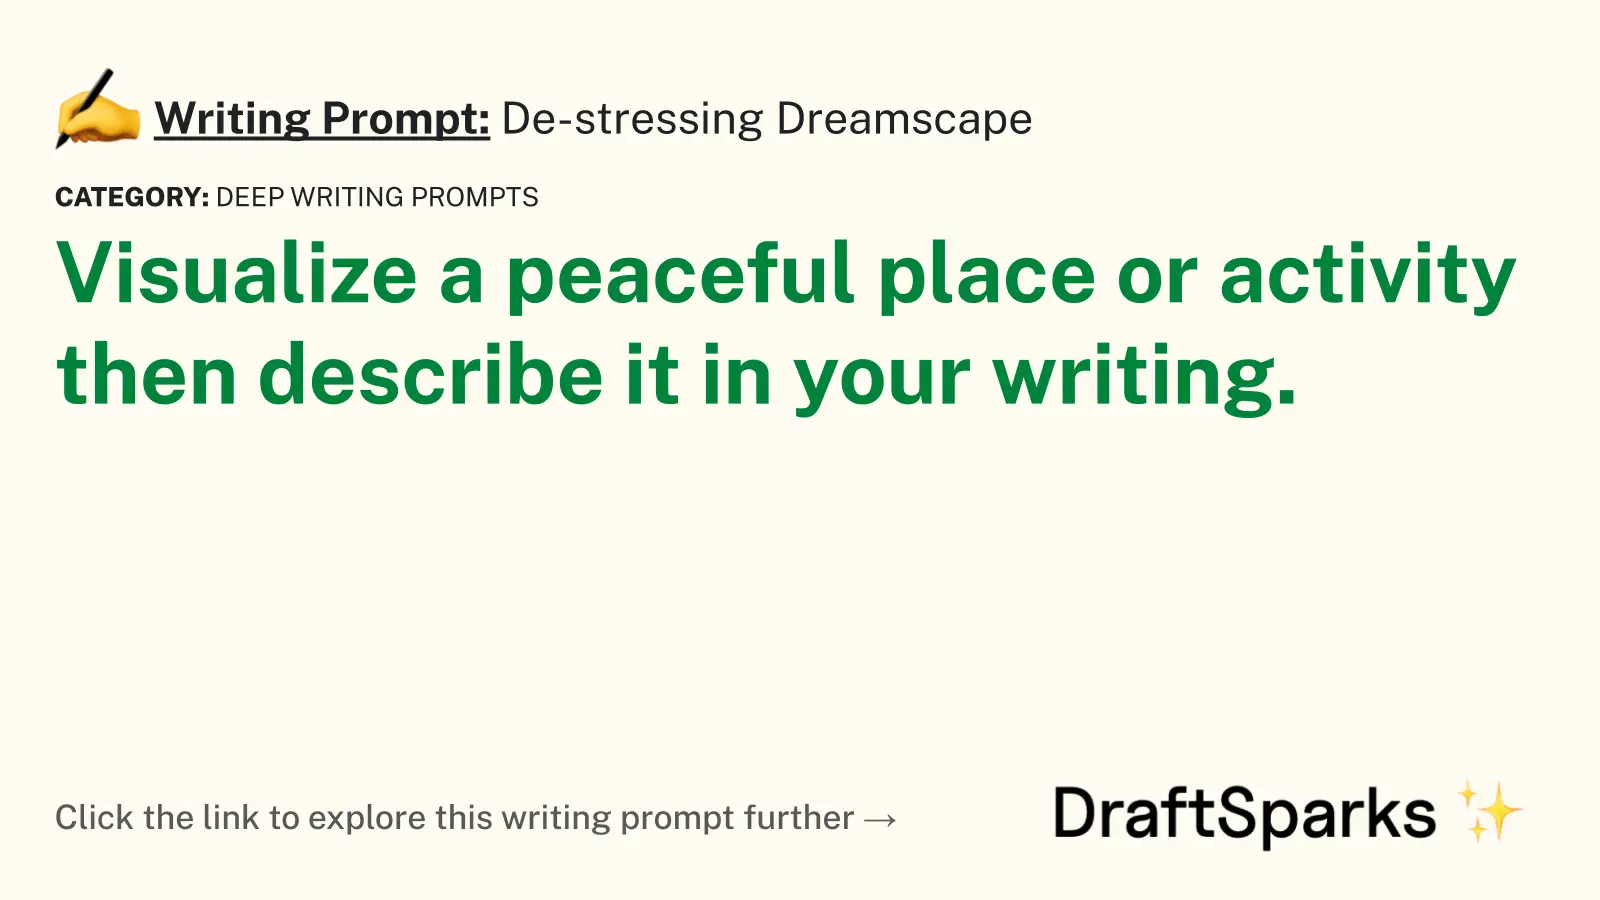 De-stressing Dreamscape